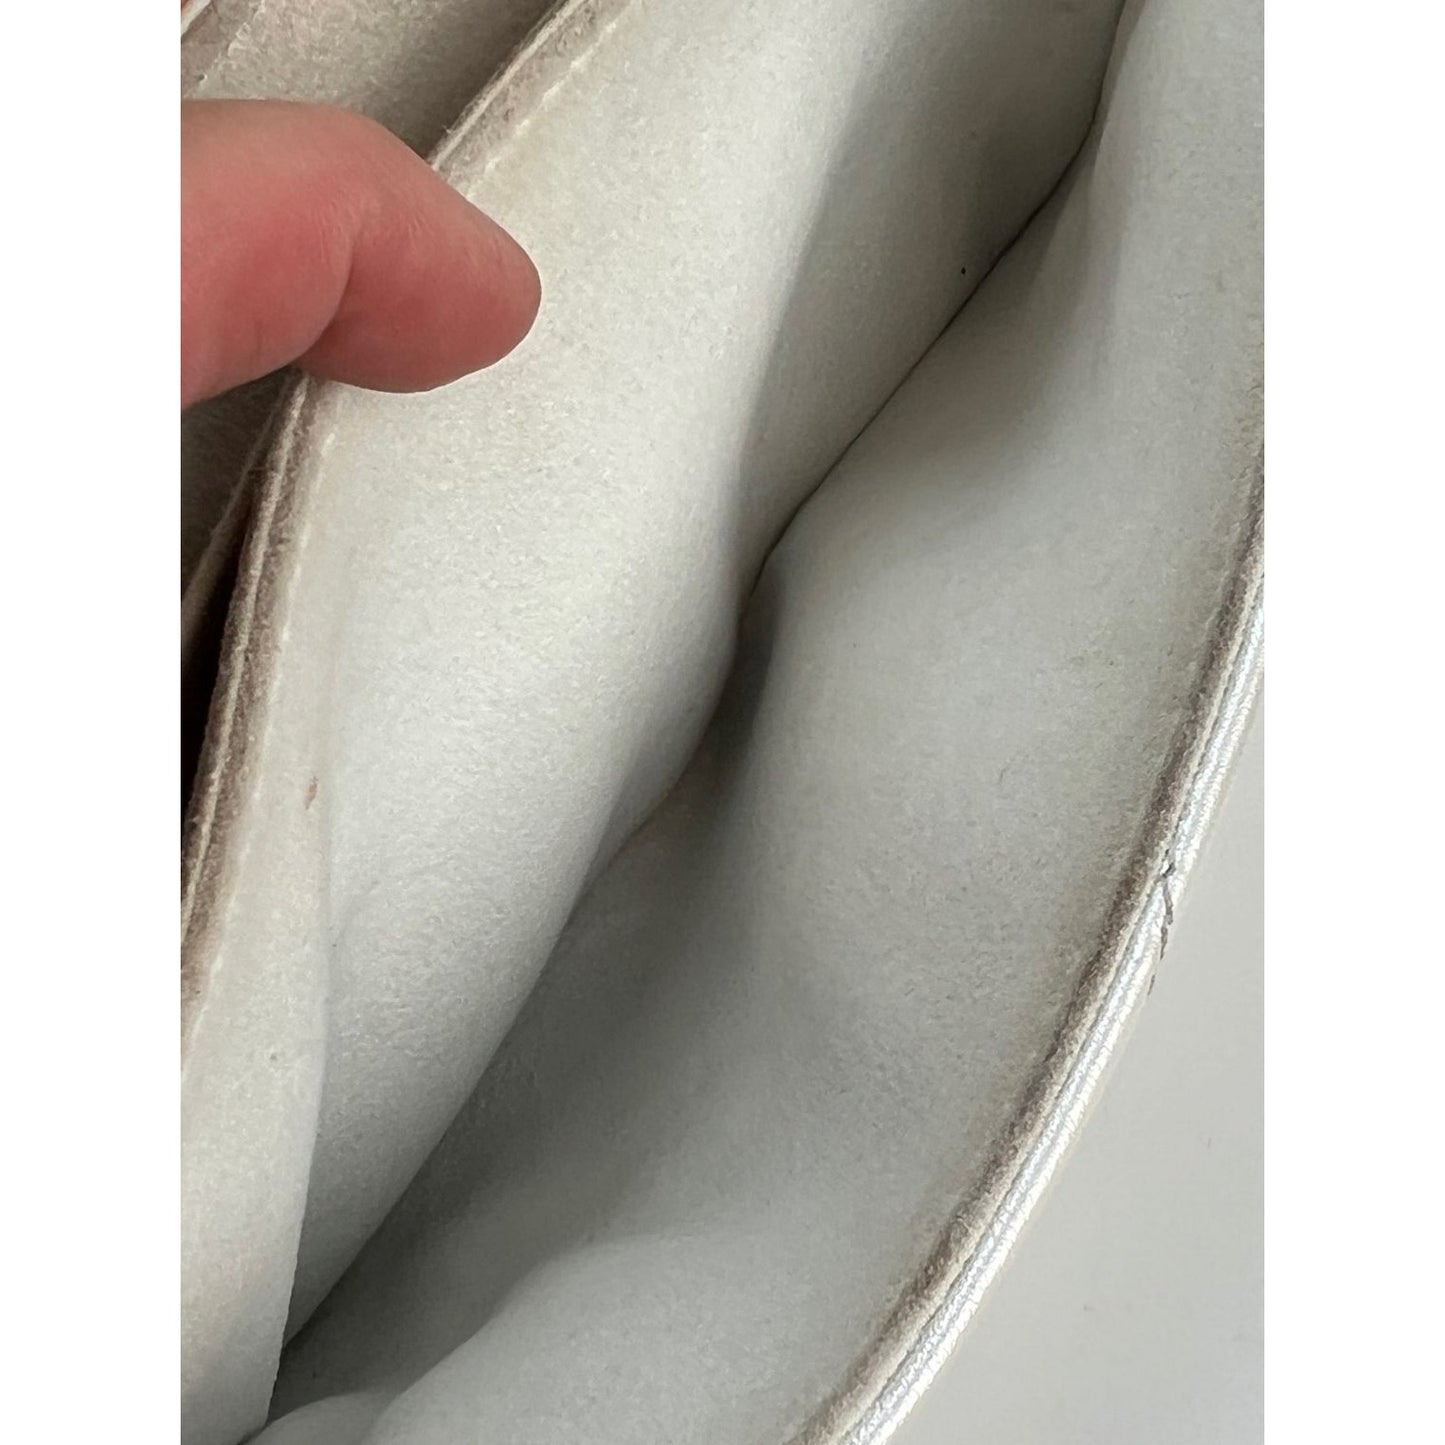 LOUIS VUITTON Metallic Calfskin New Wave Chain PM White Shoulder Bag –  Debsluxurycloset